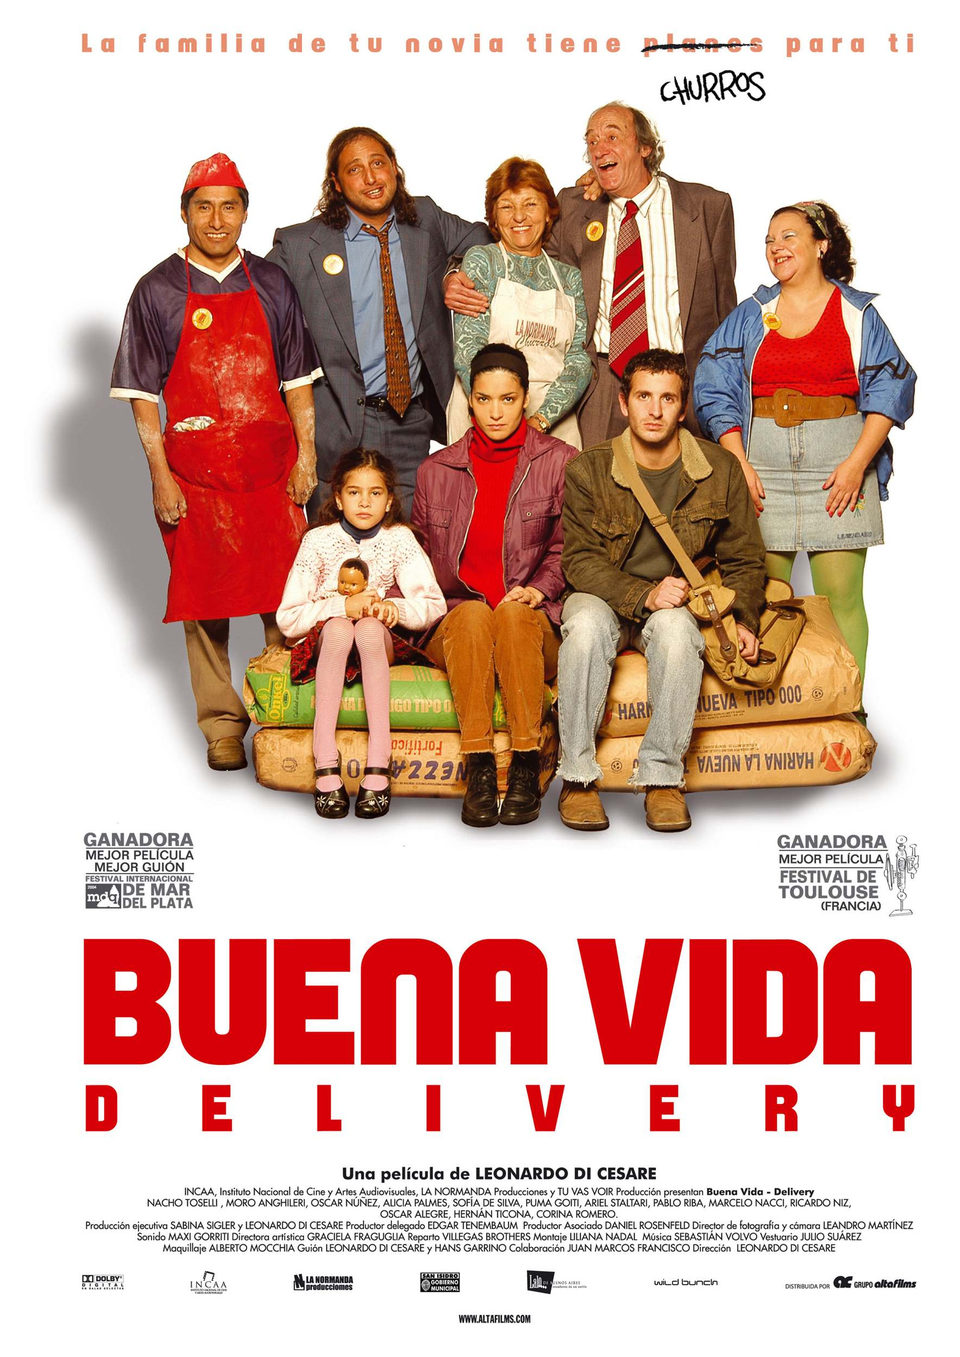 Cartel de Buena vida (Delivery) - Argentina